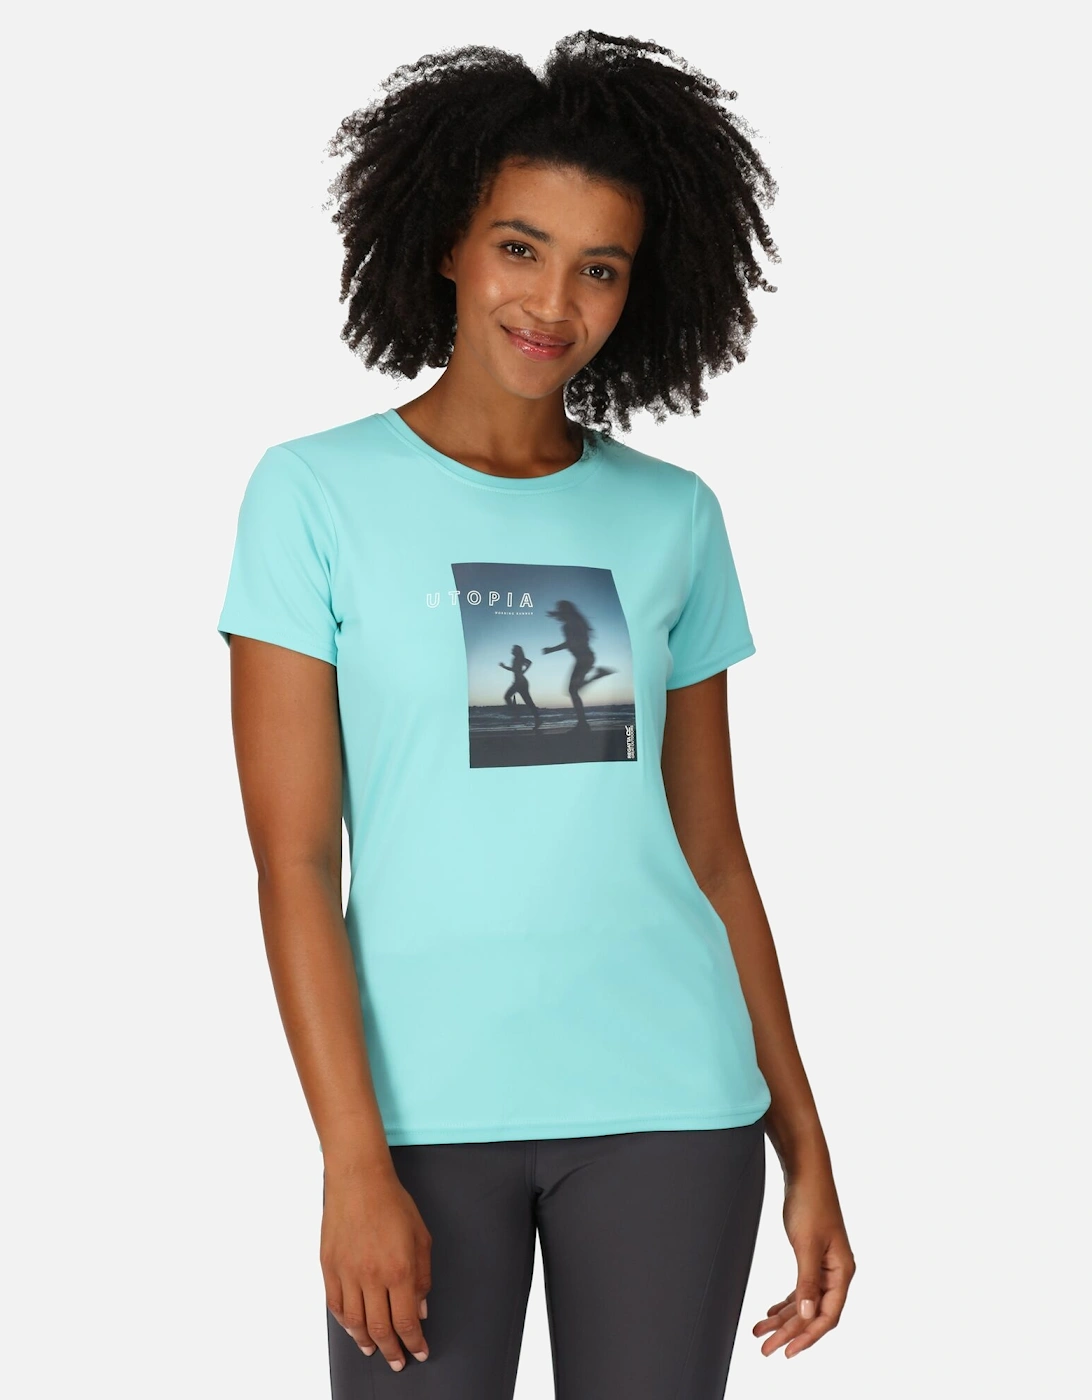 Womens/Ladies Fingal VII Utopia Running T-Shirt